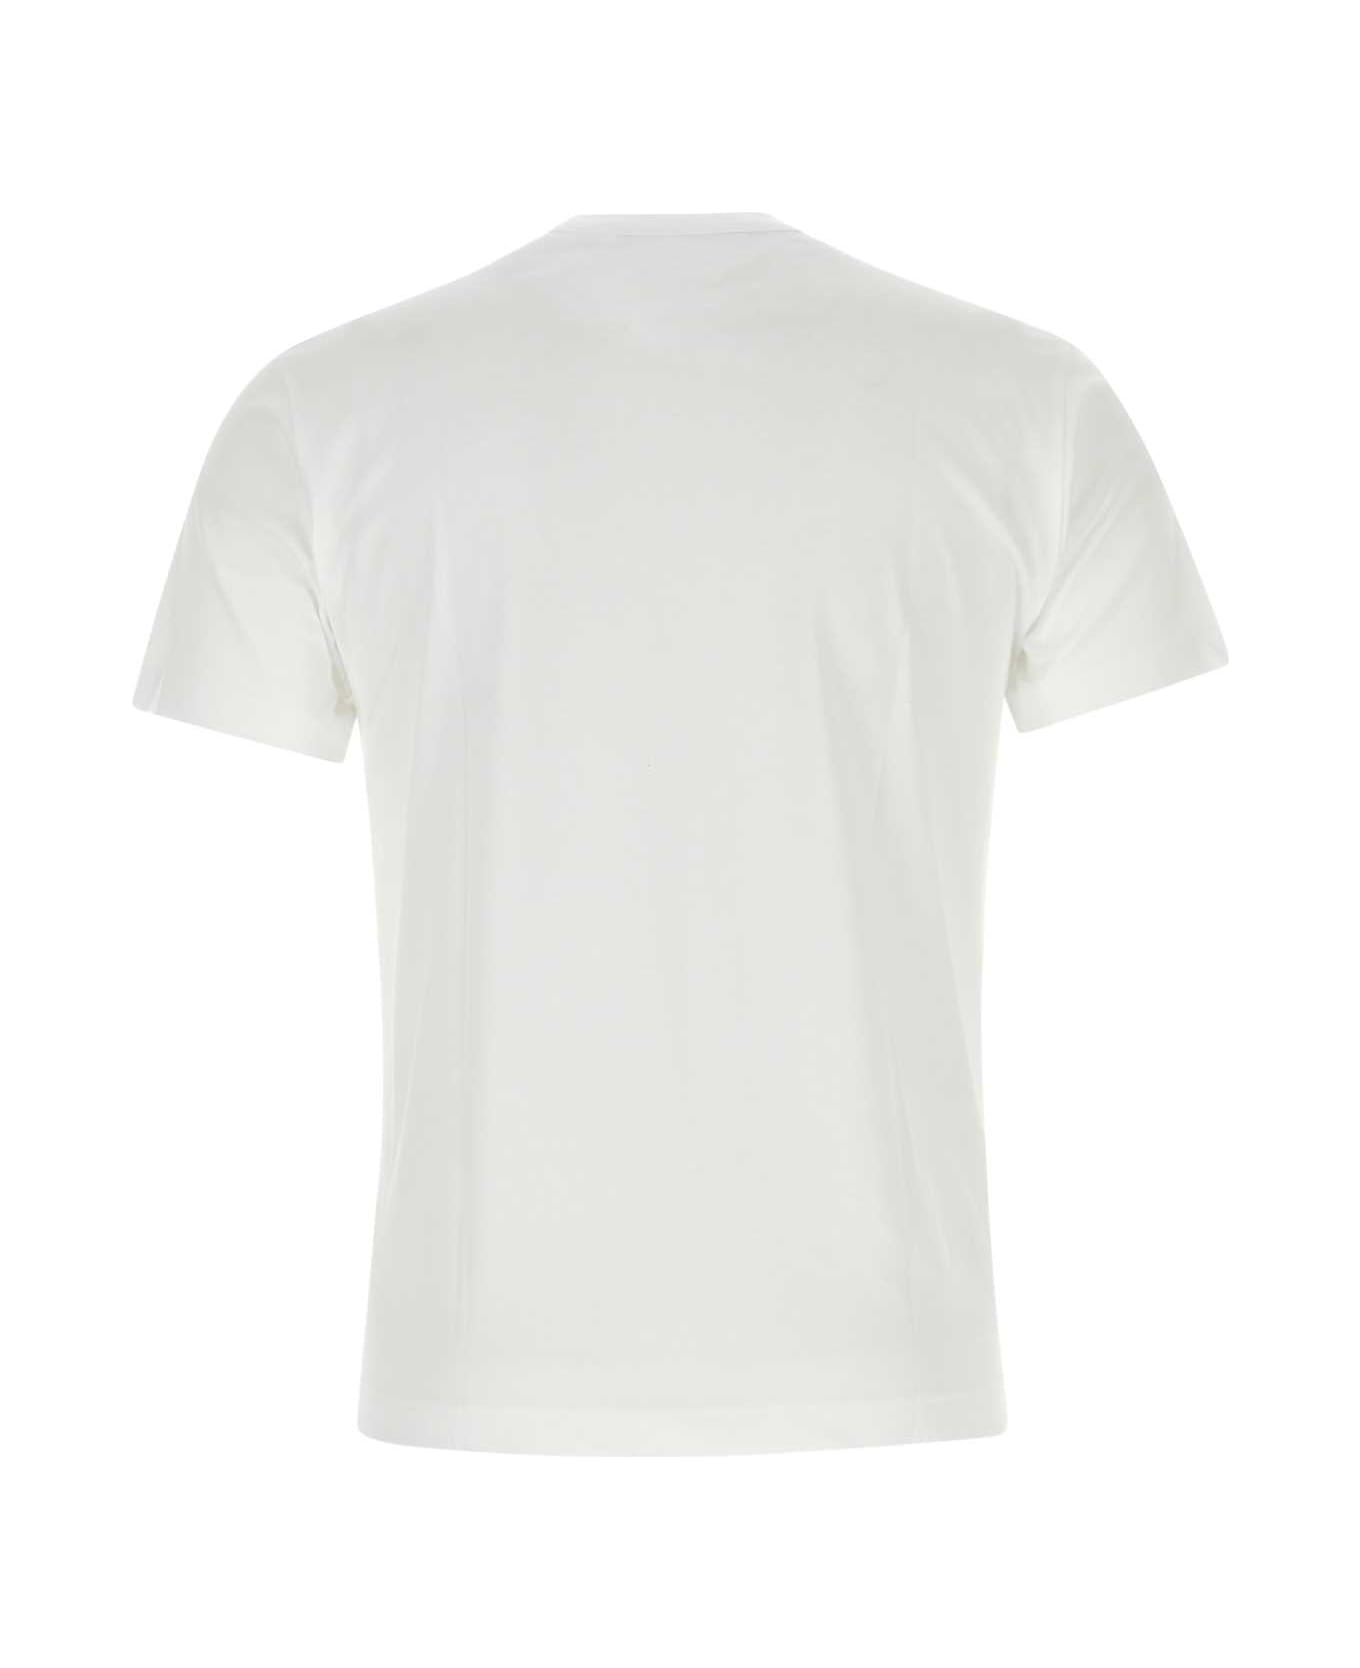 Comme des Garçons White Cotton T-shirt - WHITE